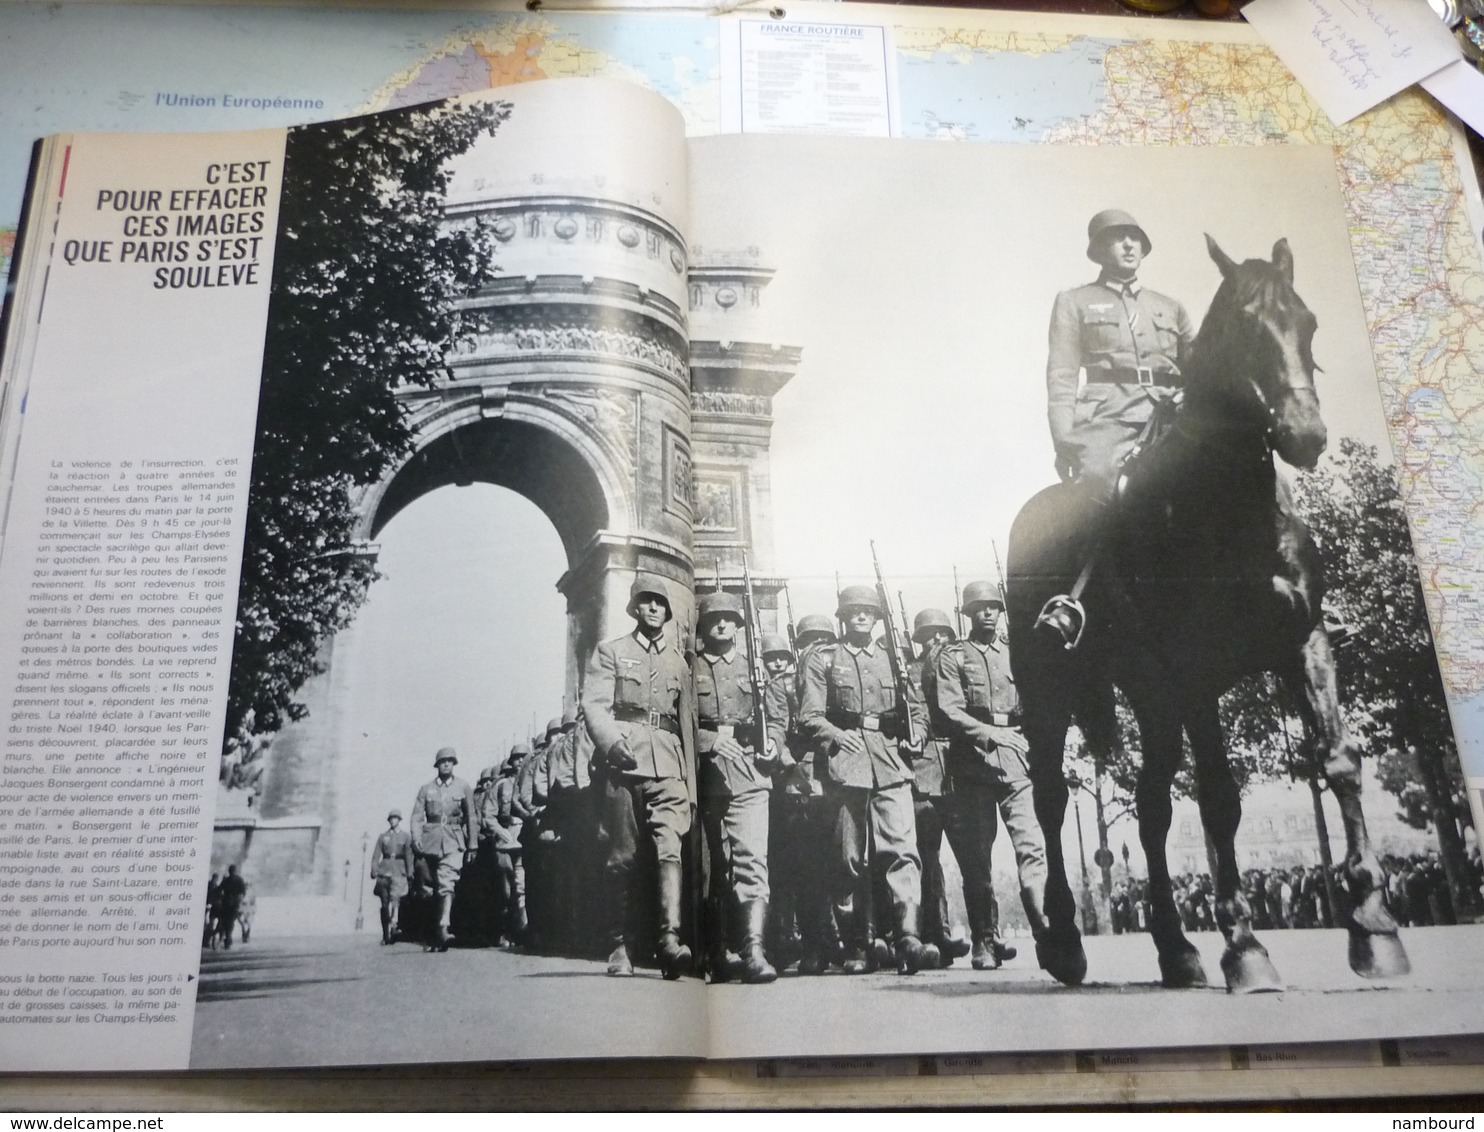 Paris Match N°793 20 Juin 1964 Numéro historique 1944 La libération de Paris